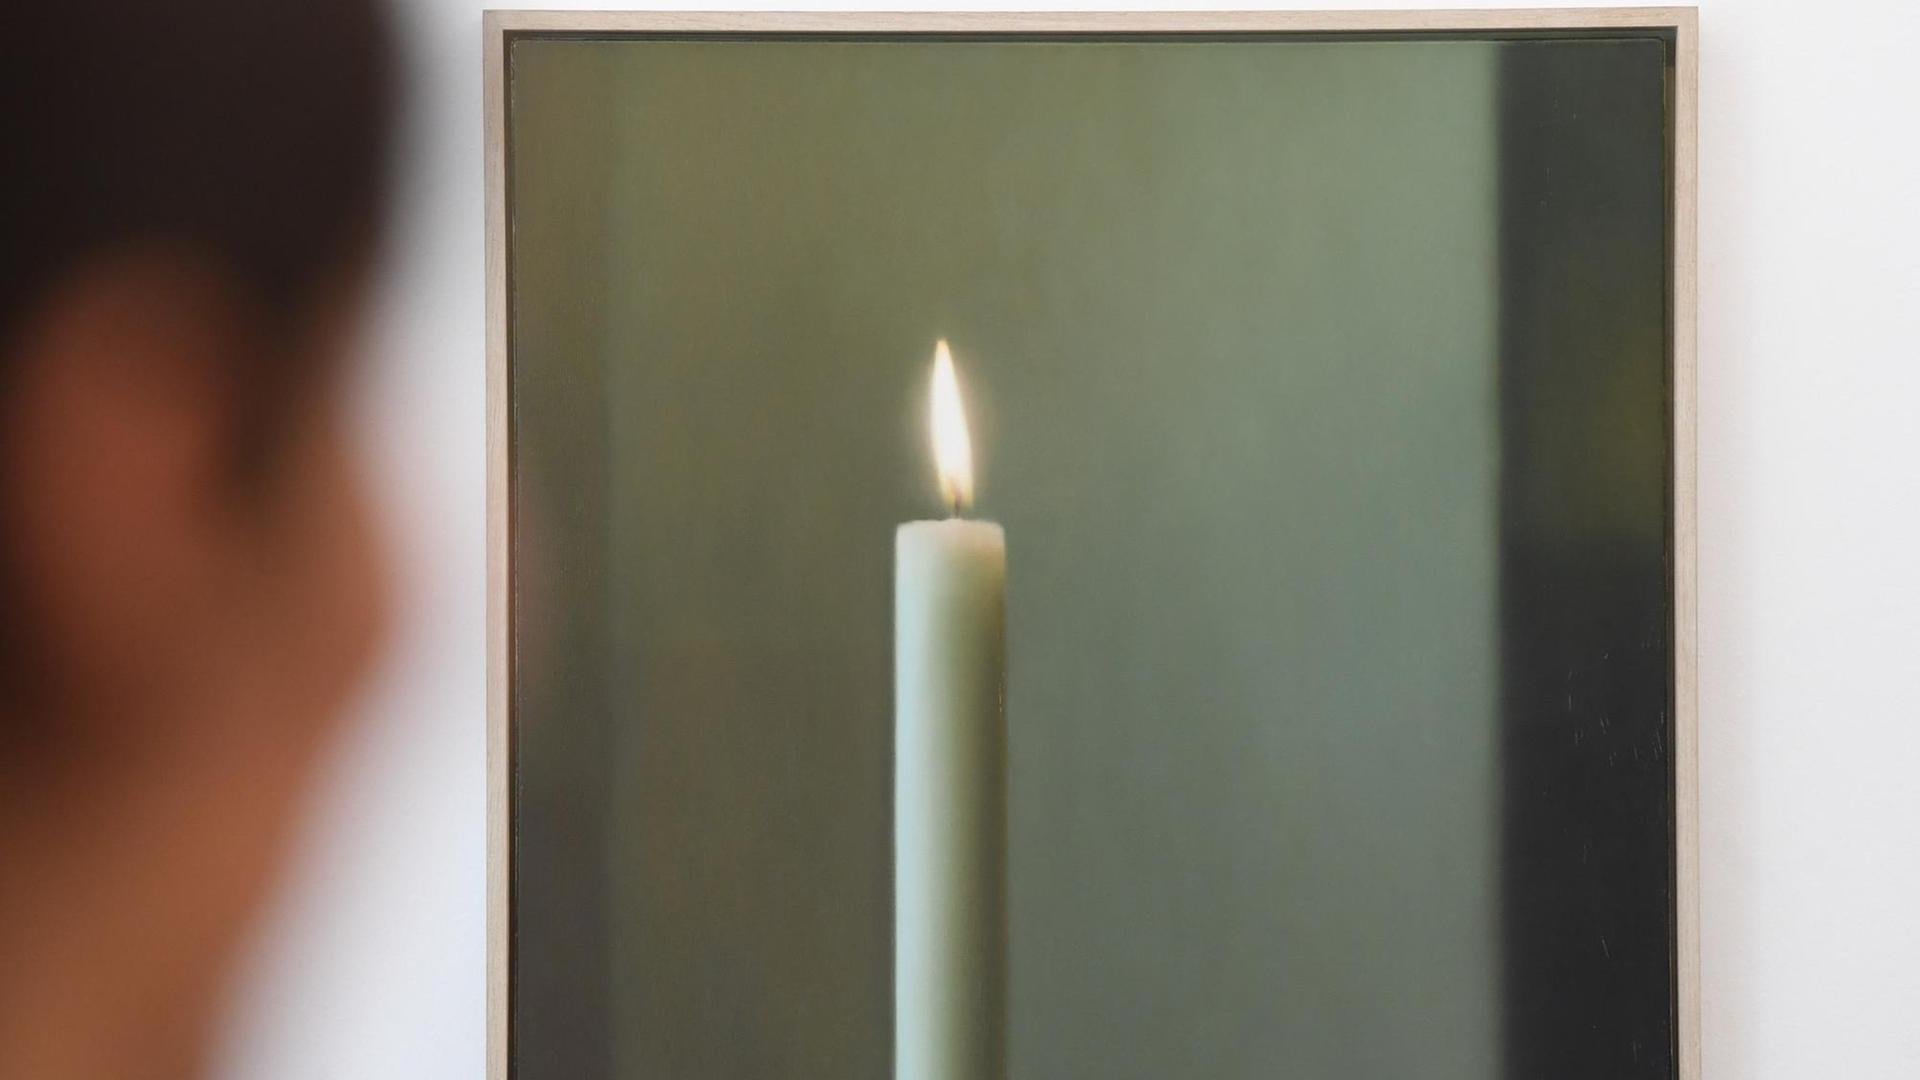 Das Werk "Kerze" von Gerhard Richter aus dem Jahr 1982: Eine schlichte weiße Kerze vor einem grauen Hintergrund.